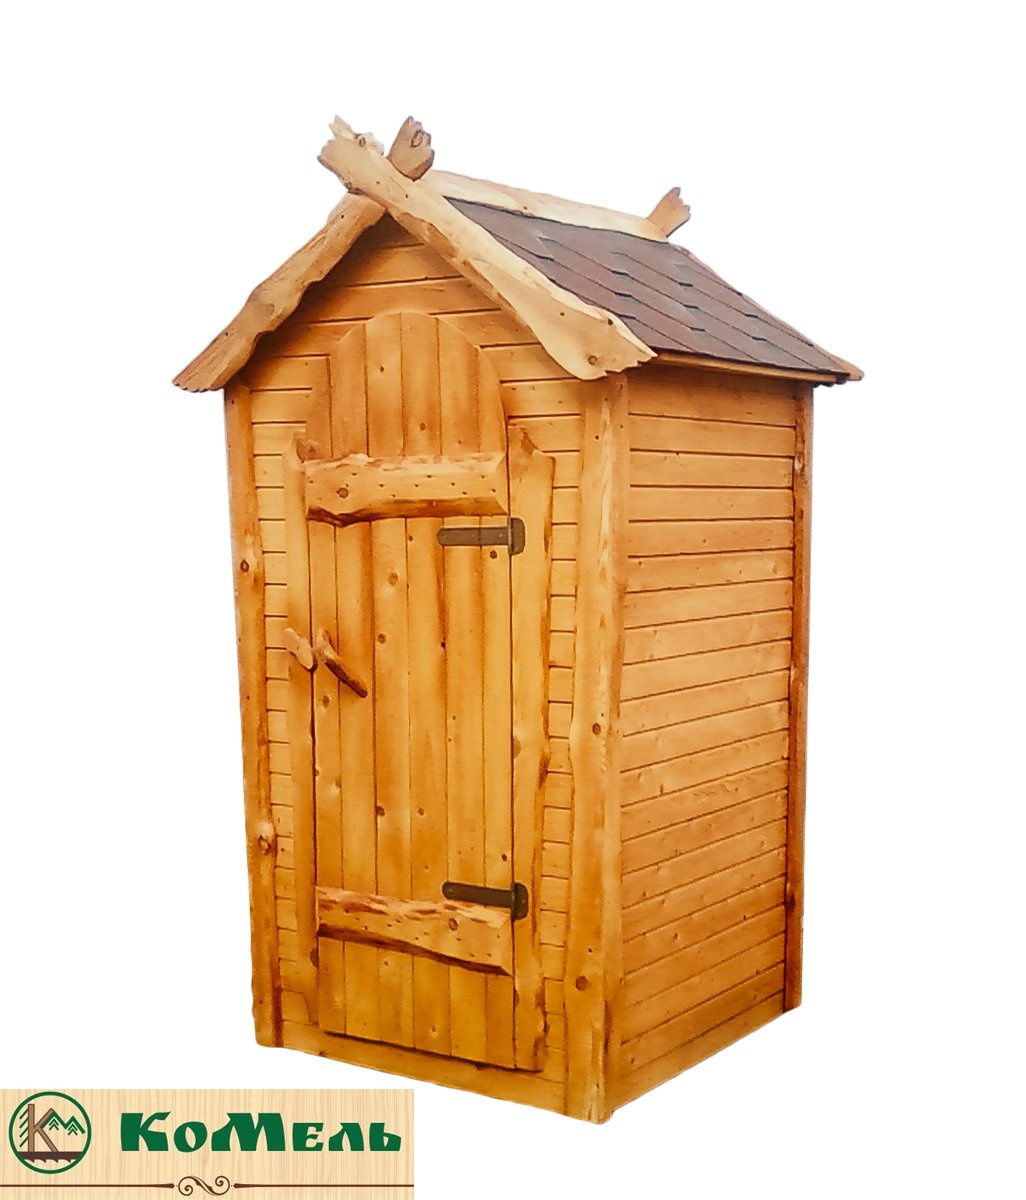 Цена готового туалета. Туалет для дачи. Деревянный туалет. Туалет дачный. Садовый туалет деревянный.